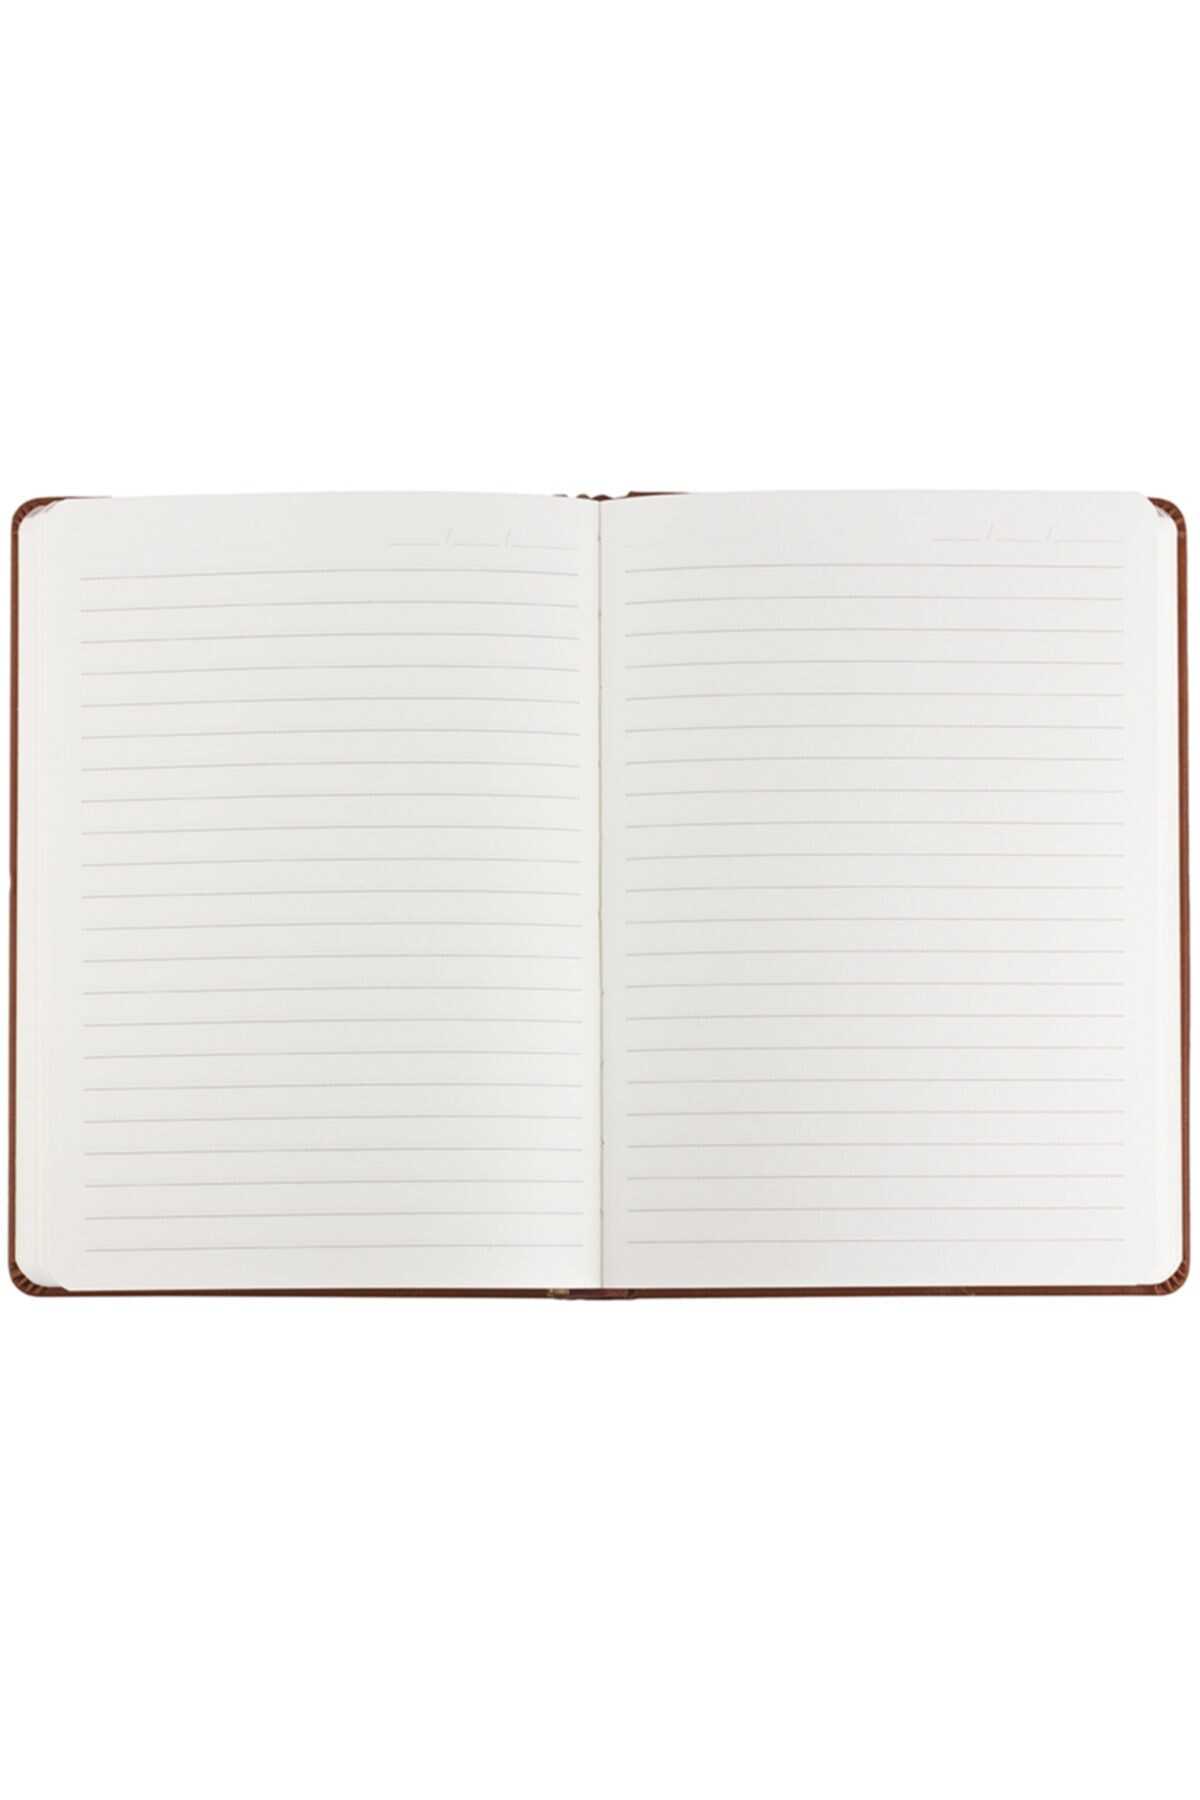 دفترچه یادداشت 14x20 سانتی طرح دار فیروزه ای برند Victoria's Journals